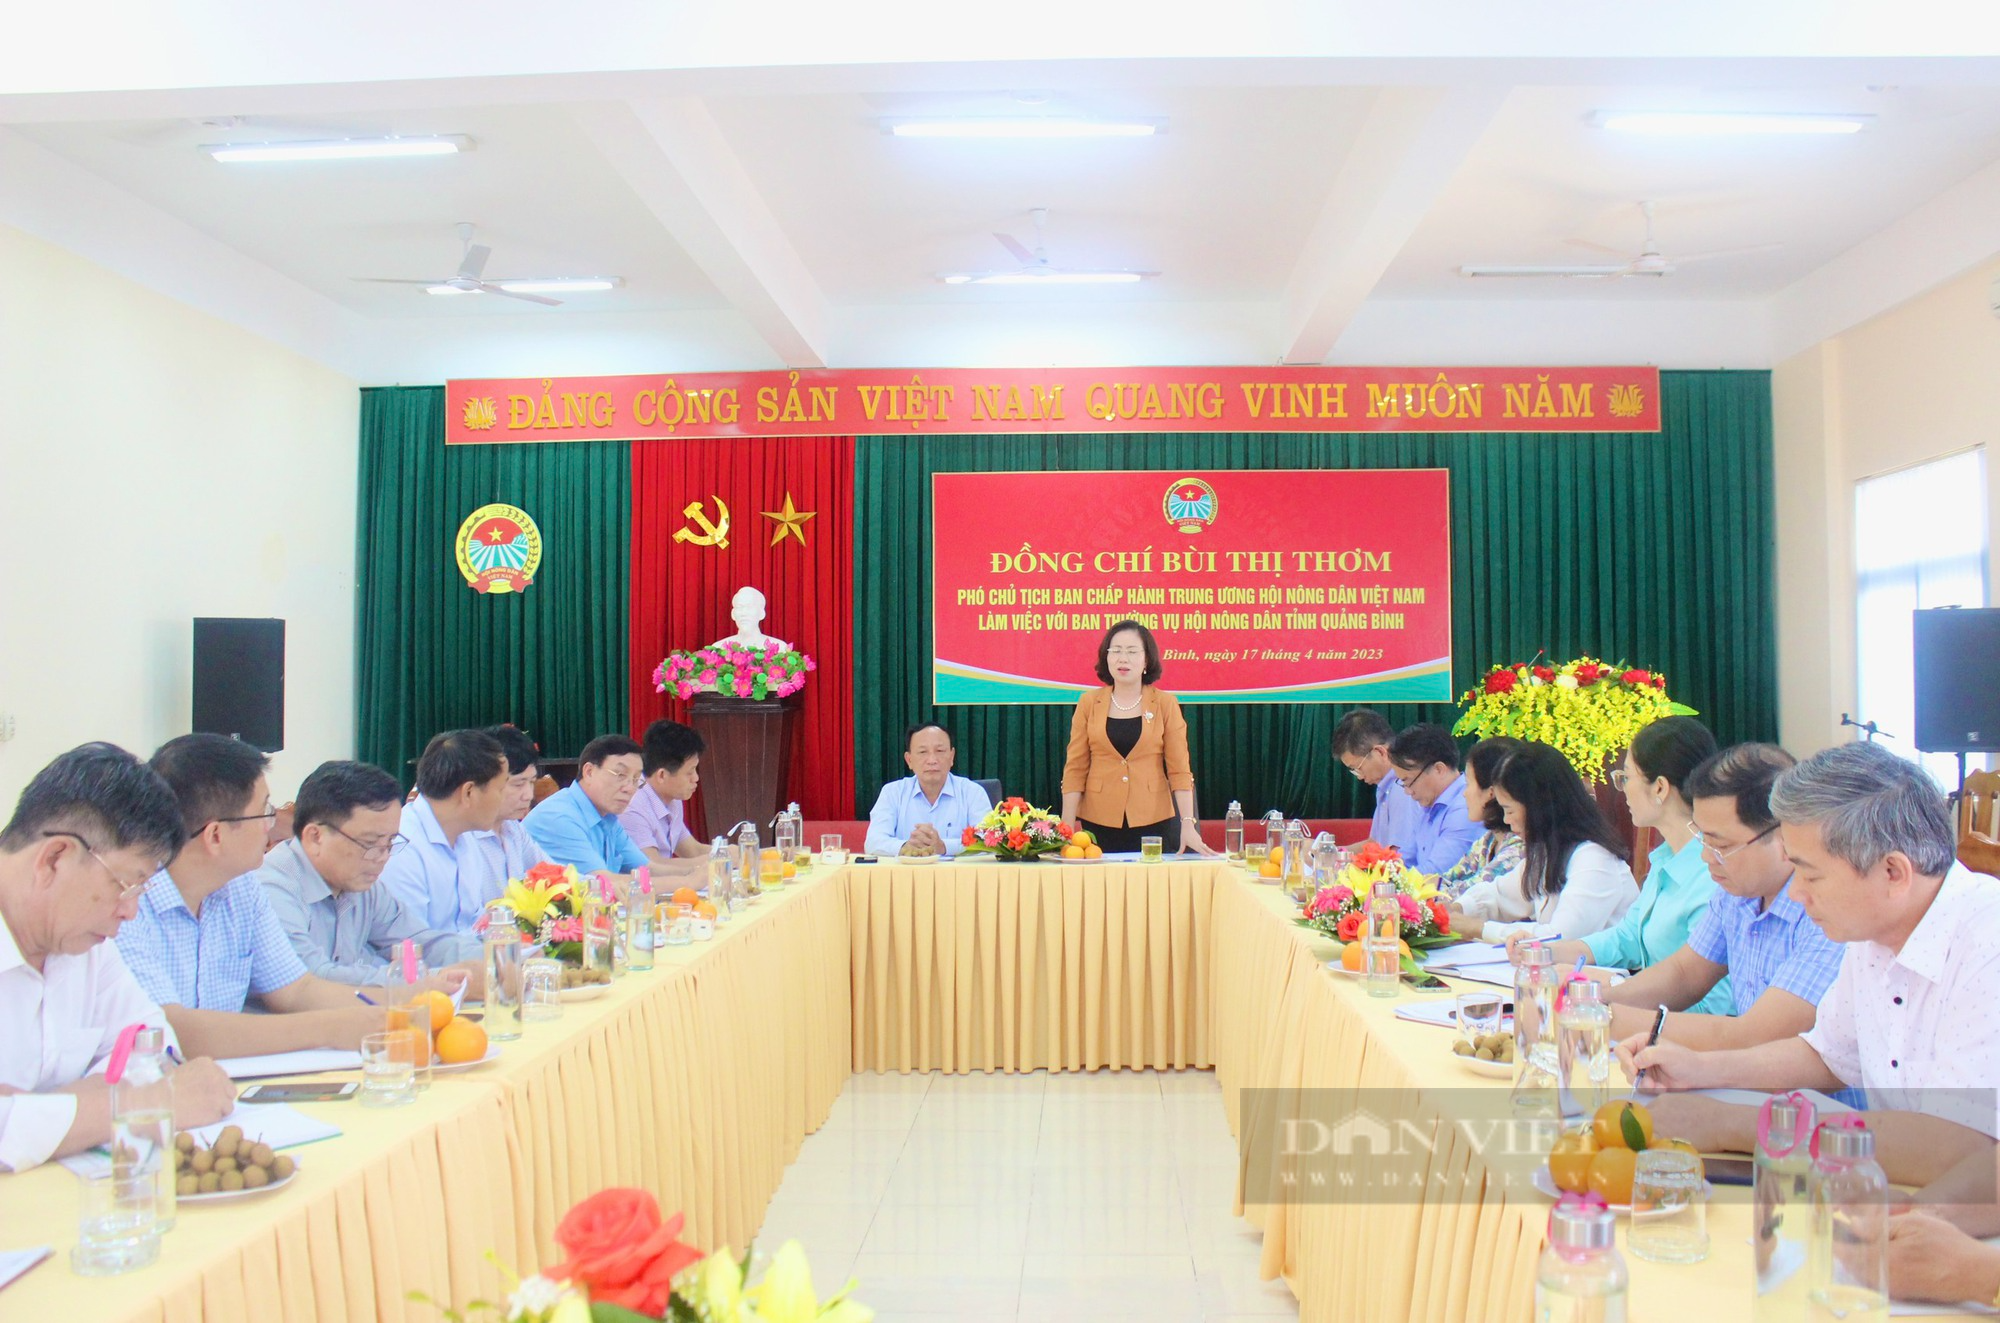 Phó Chủ tịch Trung ương Hội NDVN Bùi Thị Thơm: Cần có những đề án xây dựng các mô hình sản xuất dài hơi - Ảnh 1.